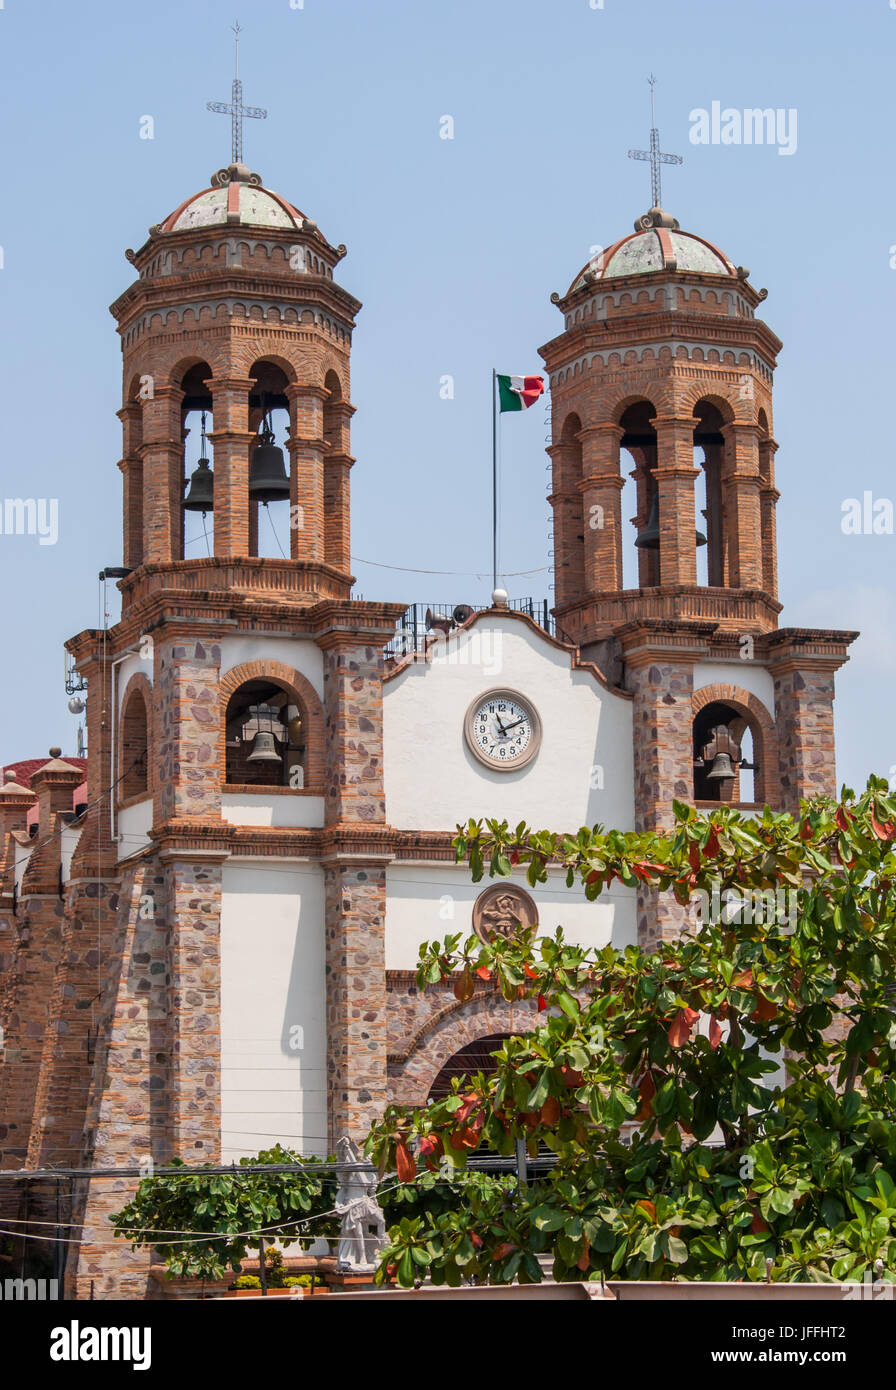 La iglesia de Pitillal. Un buen vistazo a las torres gemelas con campanas y de interesante arquitectura. Foto de stock